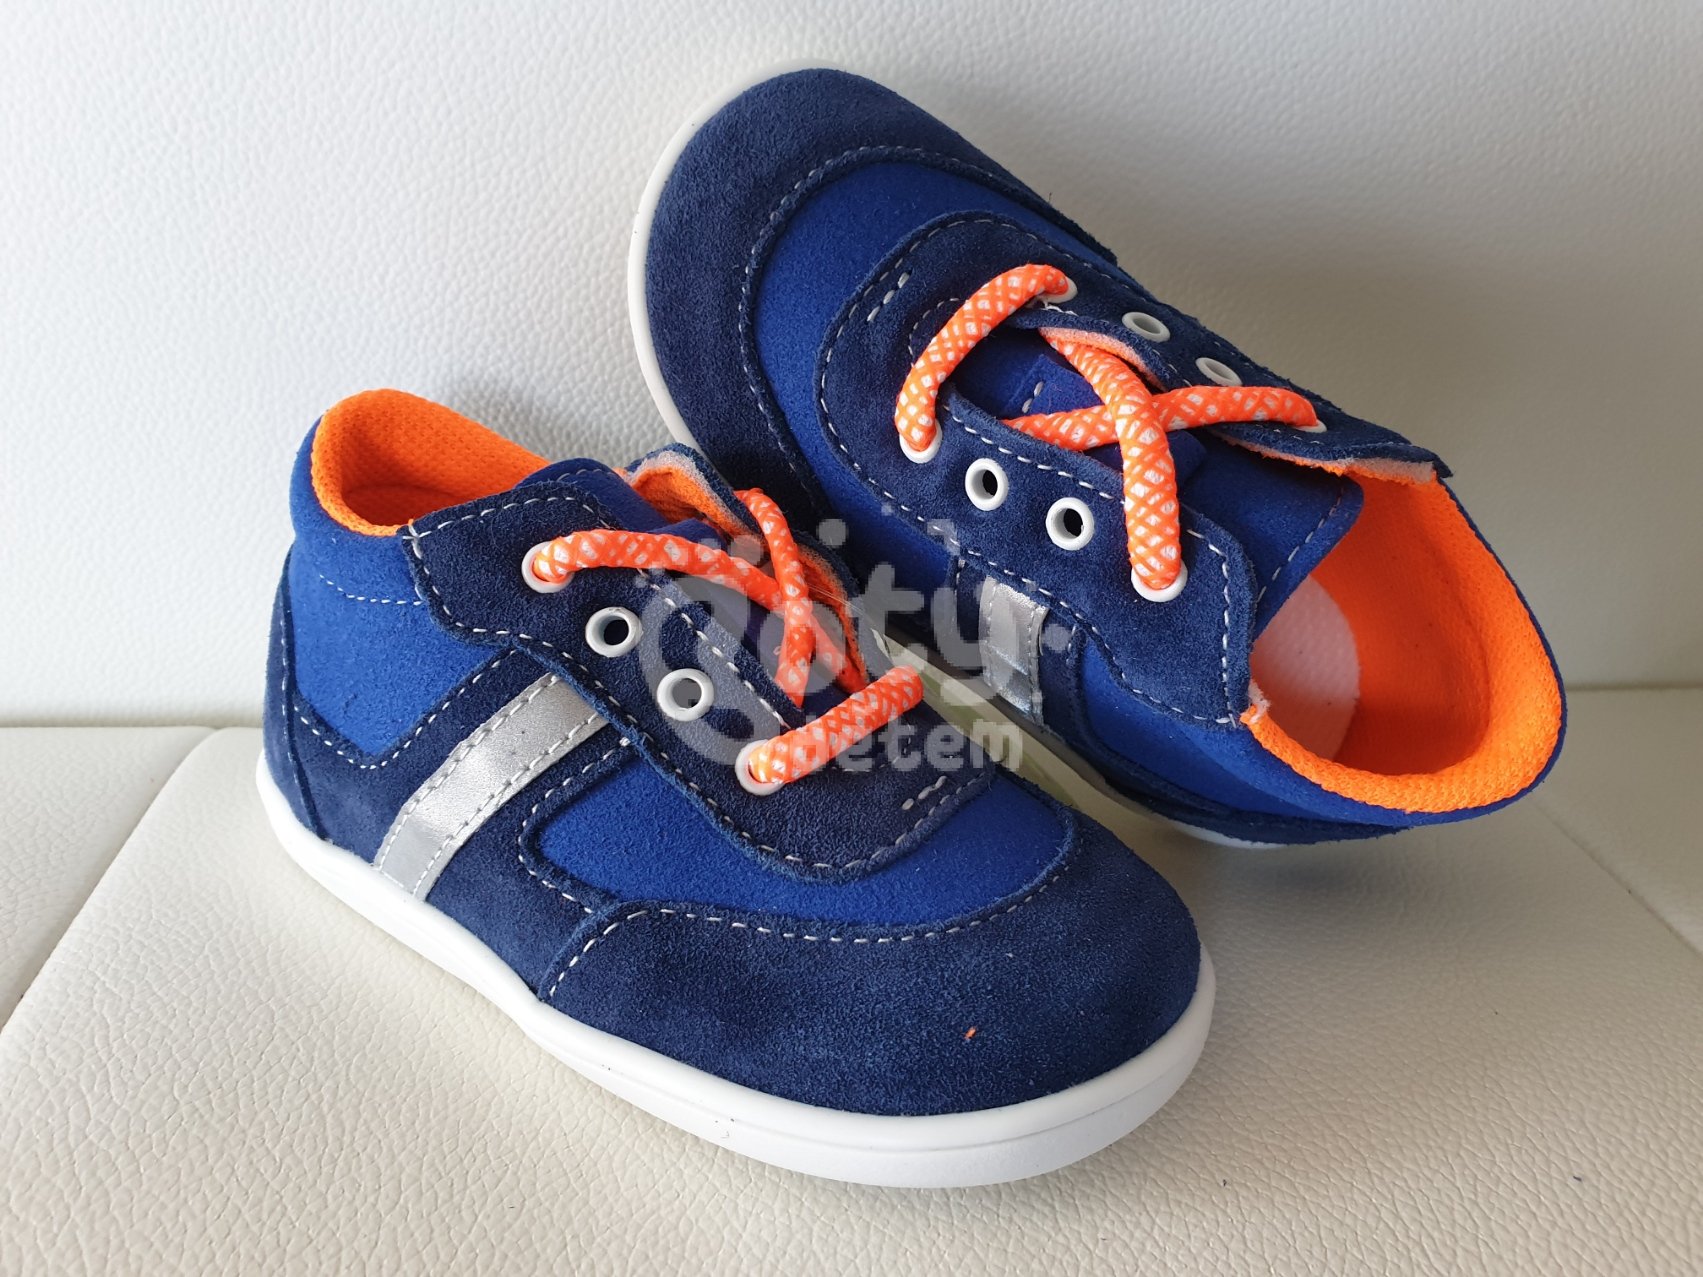 Jonap kožené boty 051S light modrá oranžová